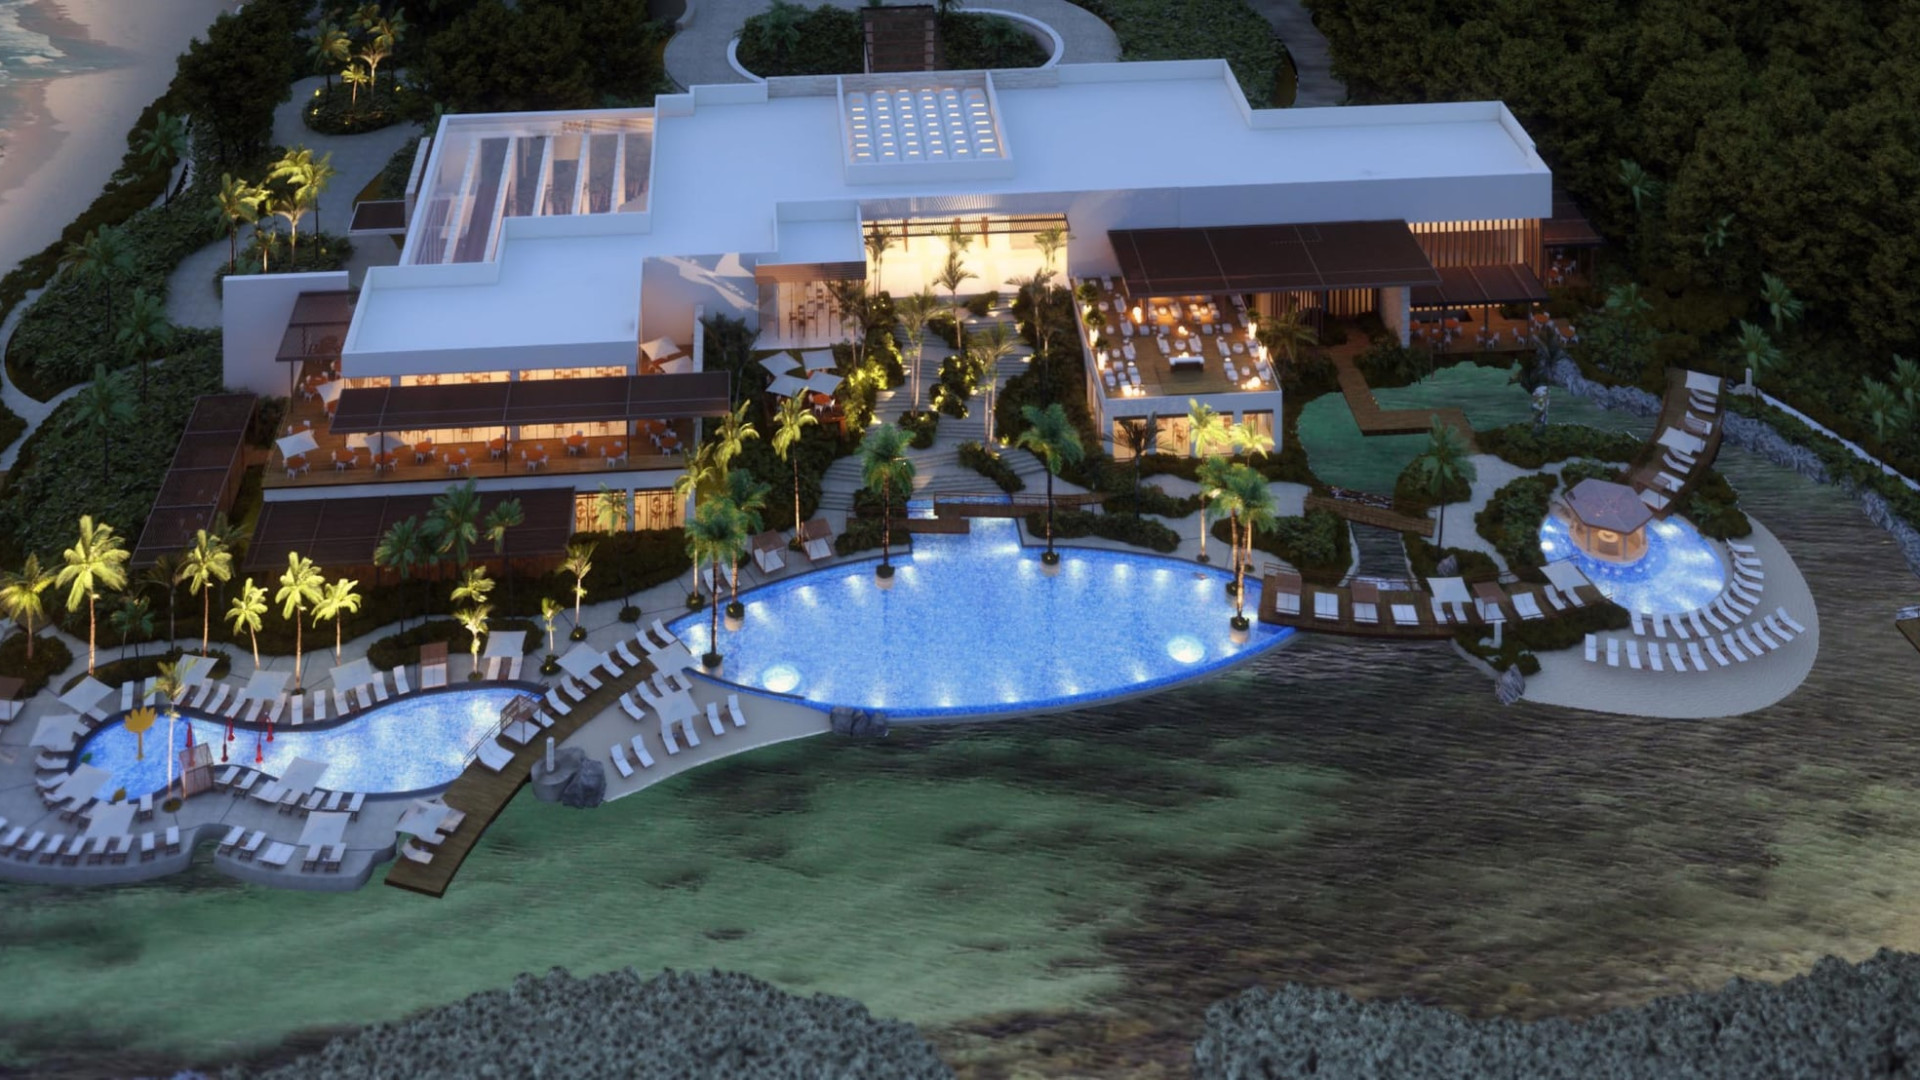 En la página del “Hilton Tulum Riviera Maya All-Inclusive Resort” ya se anuncian
                            los
                            renders de las instalaciones, a pesar de que hay procesos legales en curso y todavía no
                            se
                            terminan las construcciones.